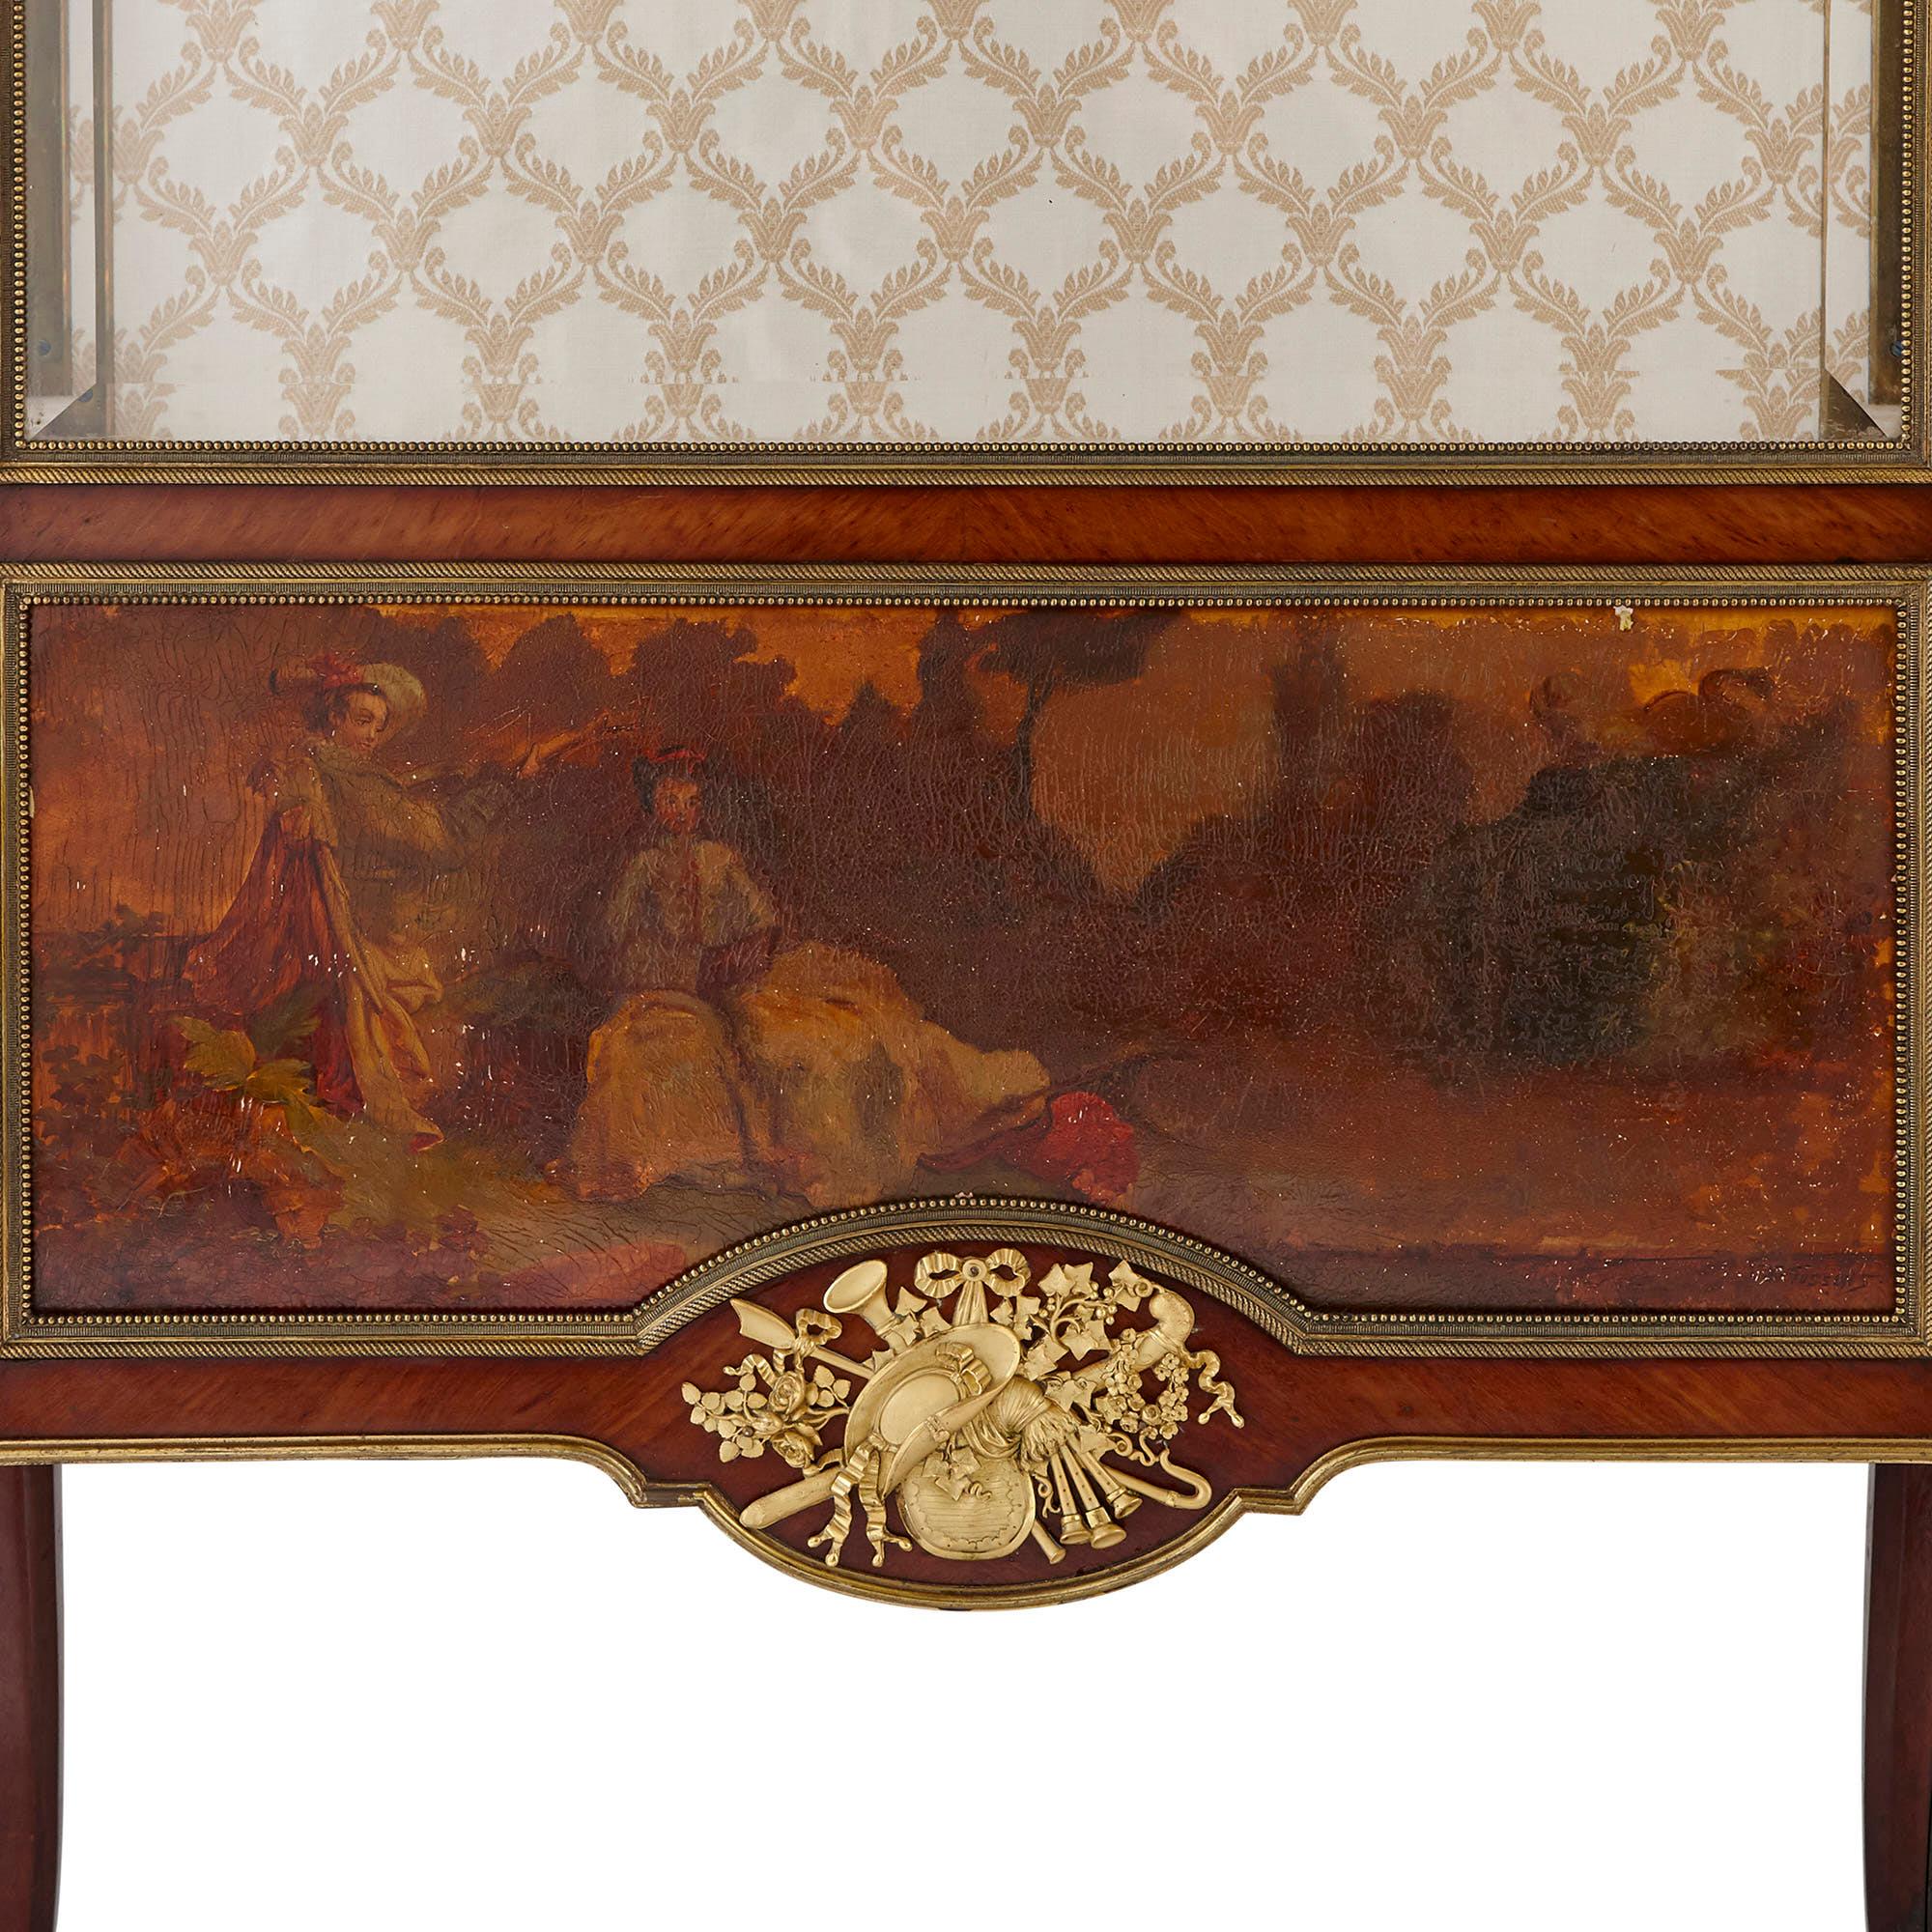 Ces élégantes vitrines ont été fabriquées à la fin du XIXe siècle par le principal ébéniste de l'époque, François Linke (Français, 1855-1946). Linke était mondialement connu pour ses meubles du XVIIIe siècle de style Louis XV et Louis XVI revival.